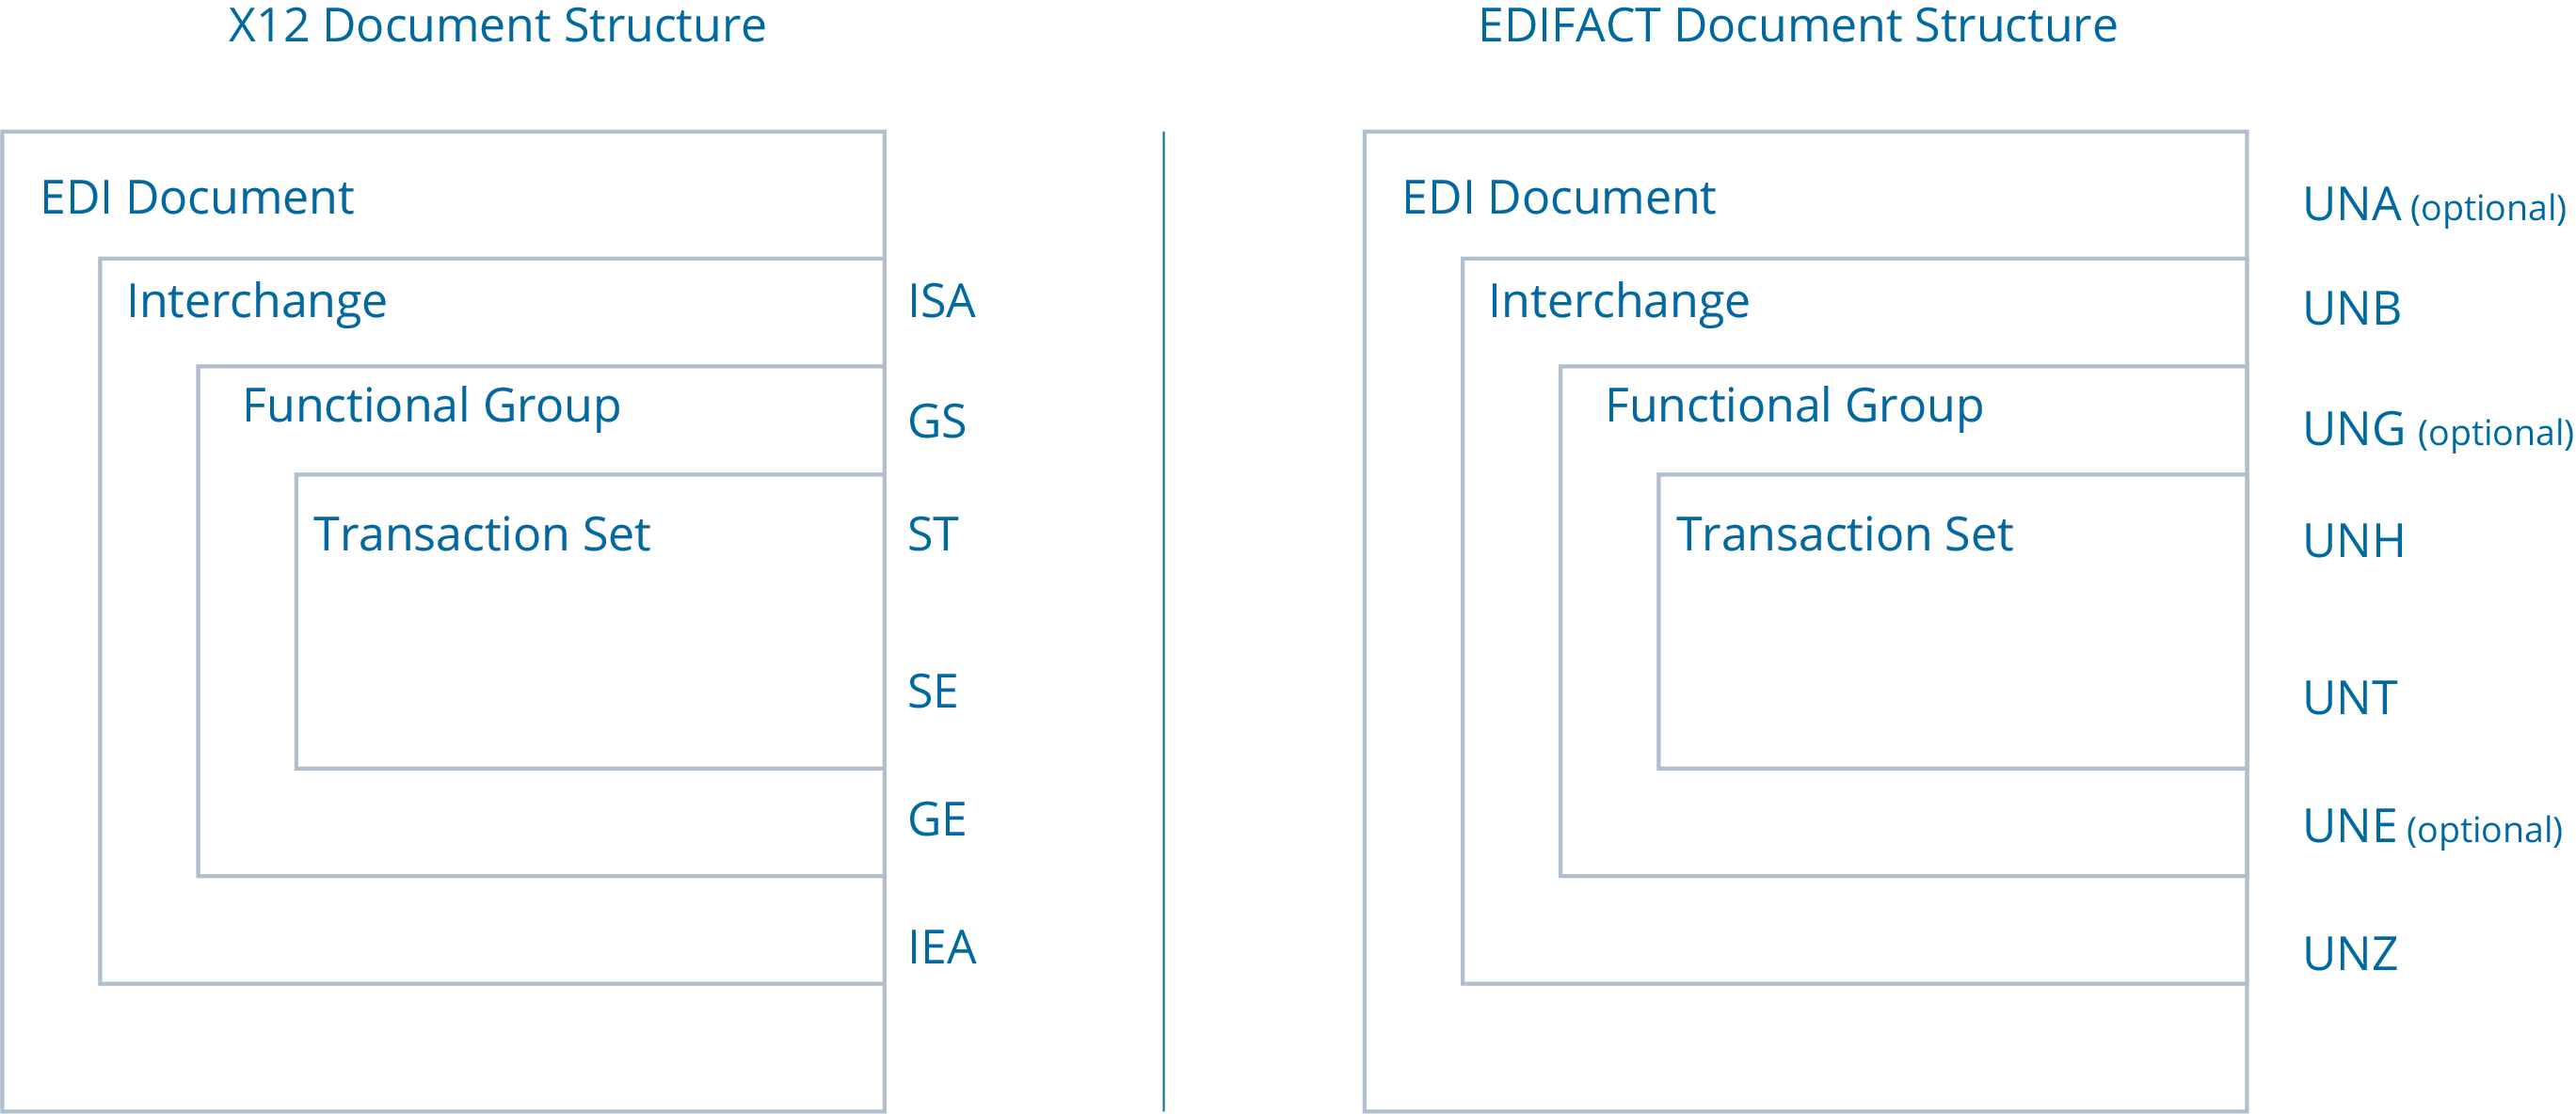 X12 vs. EDIFACT Document Format